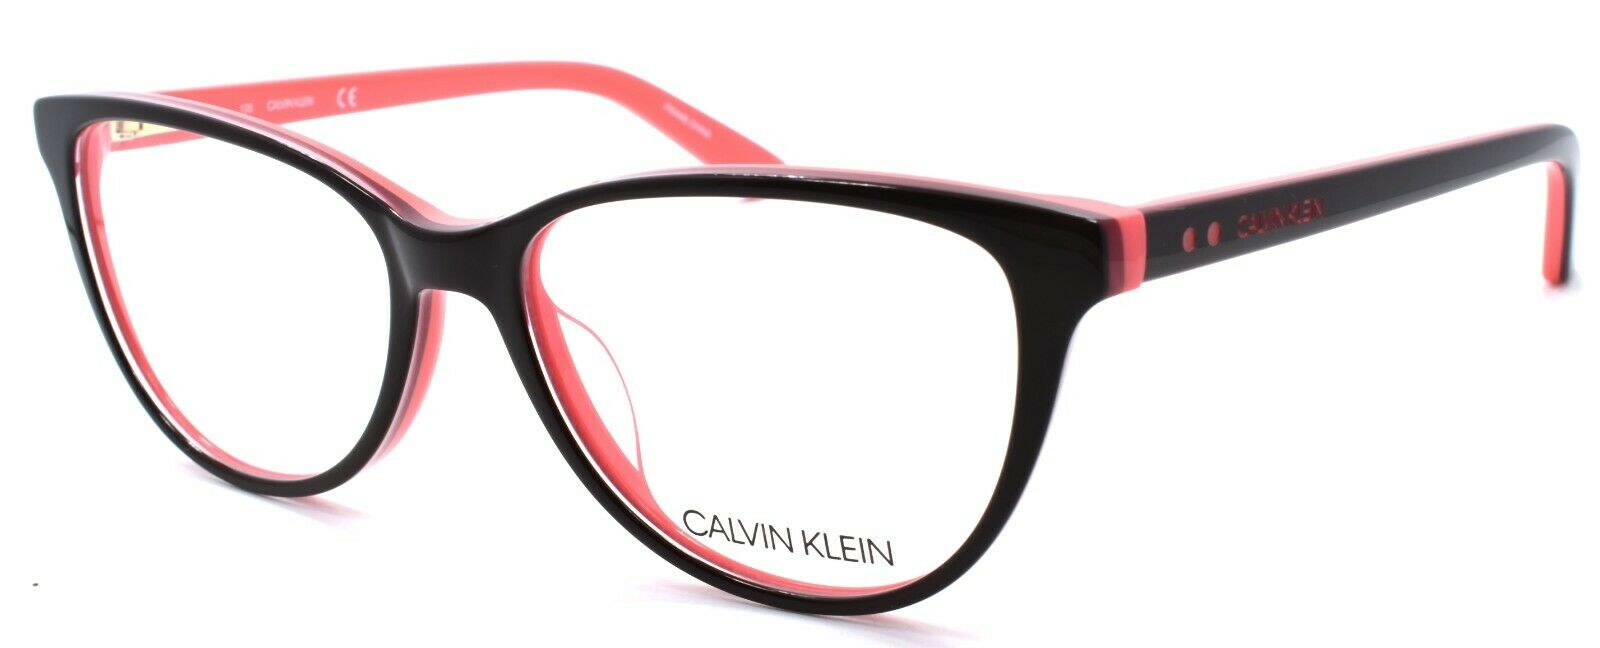 1-Calvin Klein CK19516 205 Women's Glasses Cat Eye 52-15-135 Dark Brown / Coral-883901111149-IKSpecs